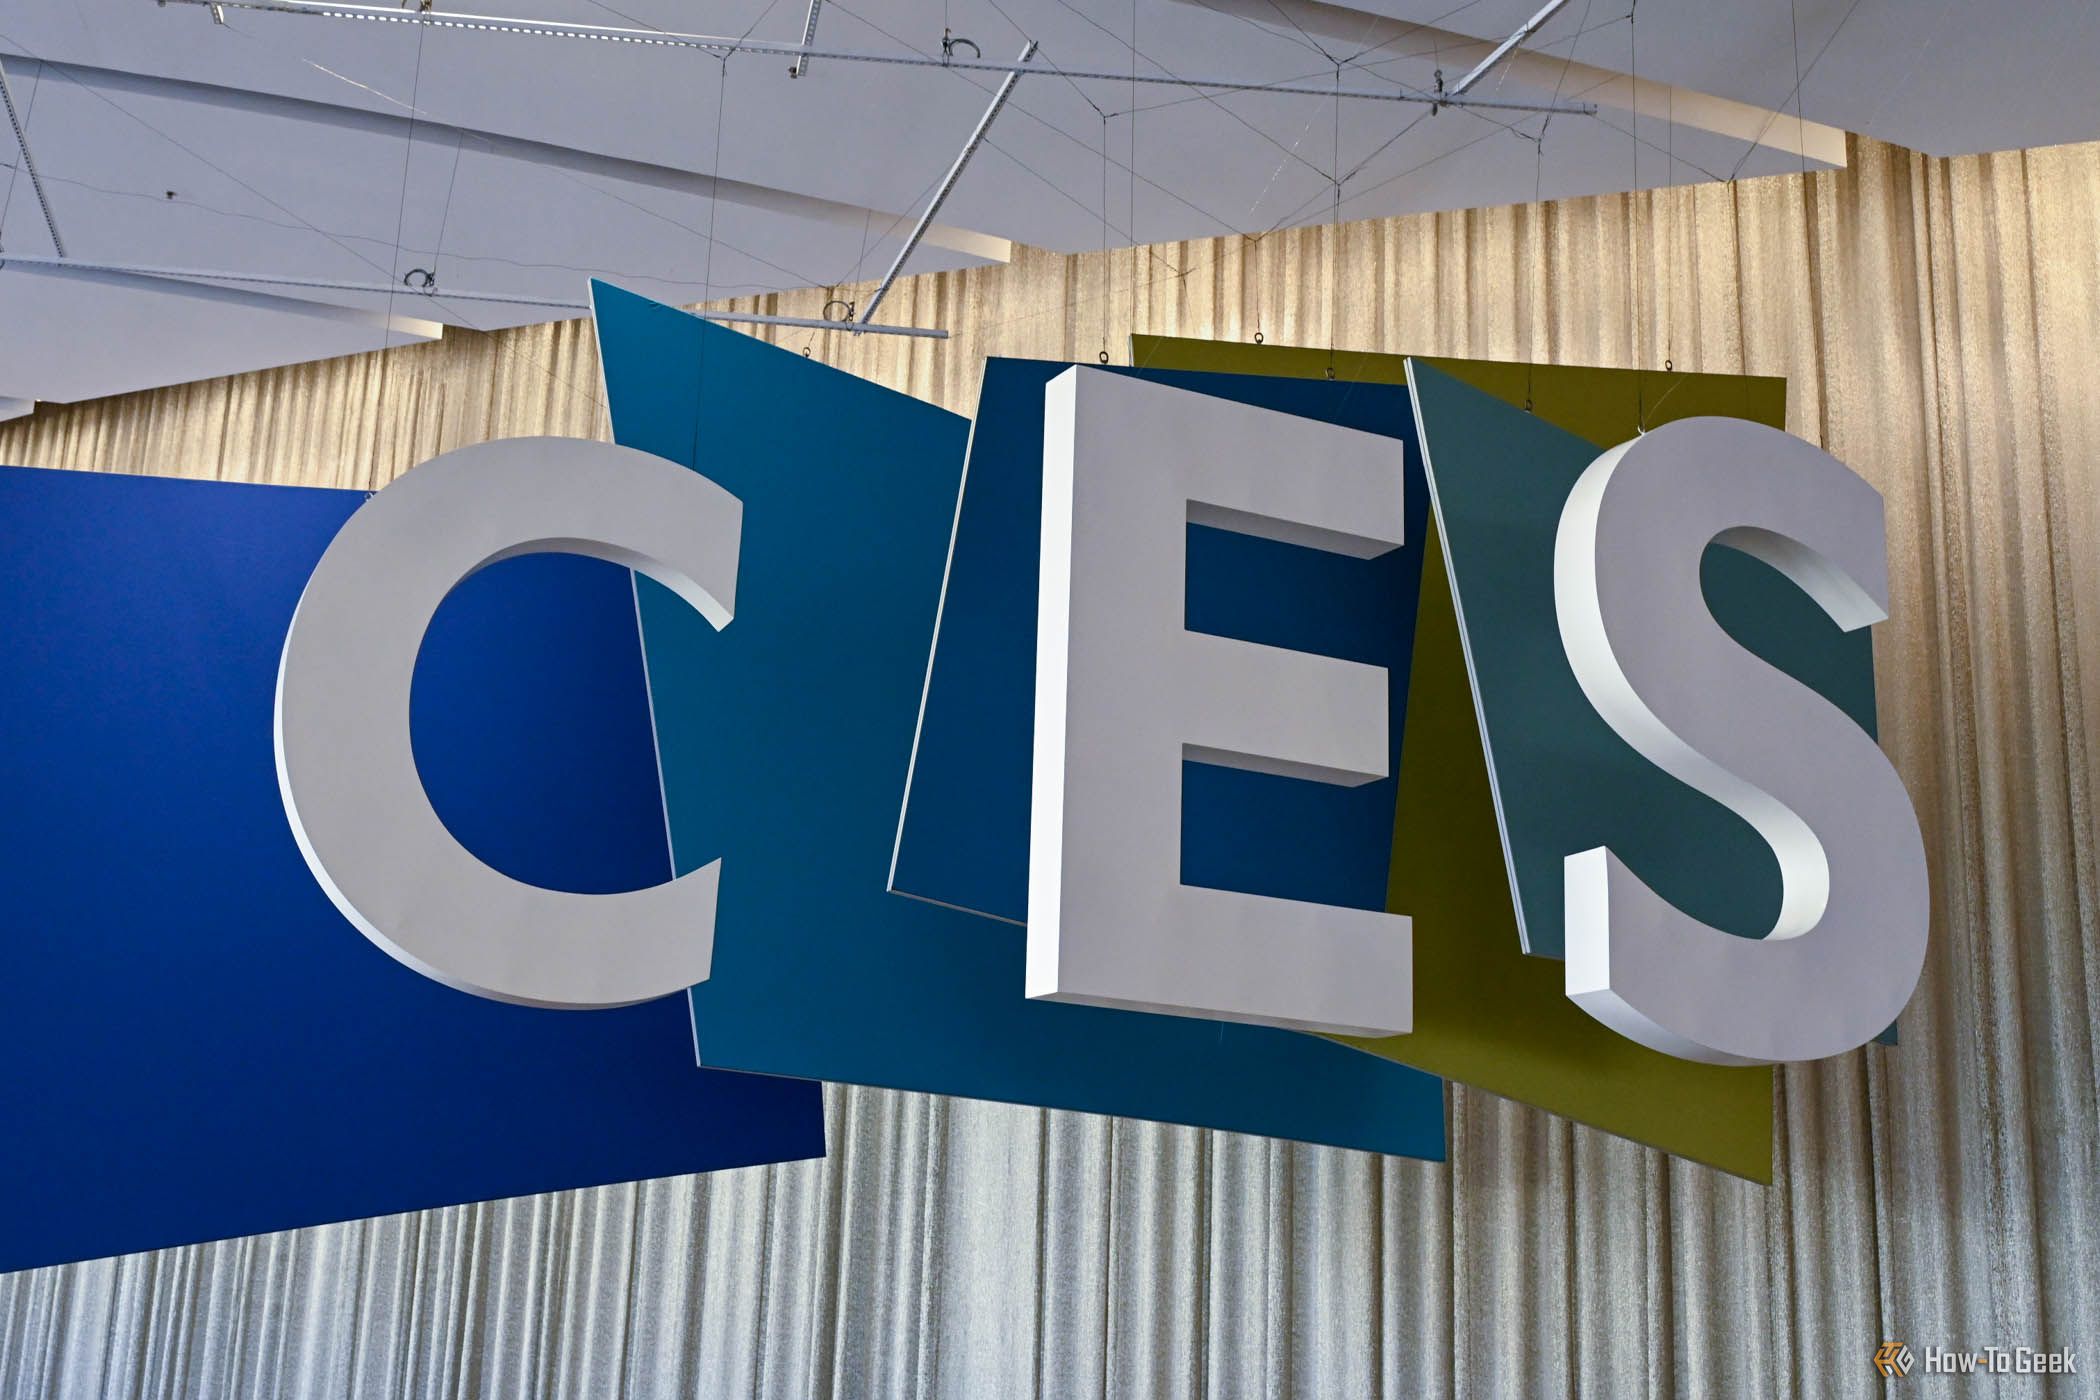 CES Signage at CES 2024.